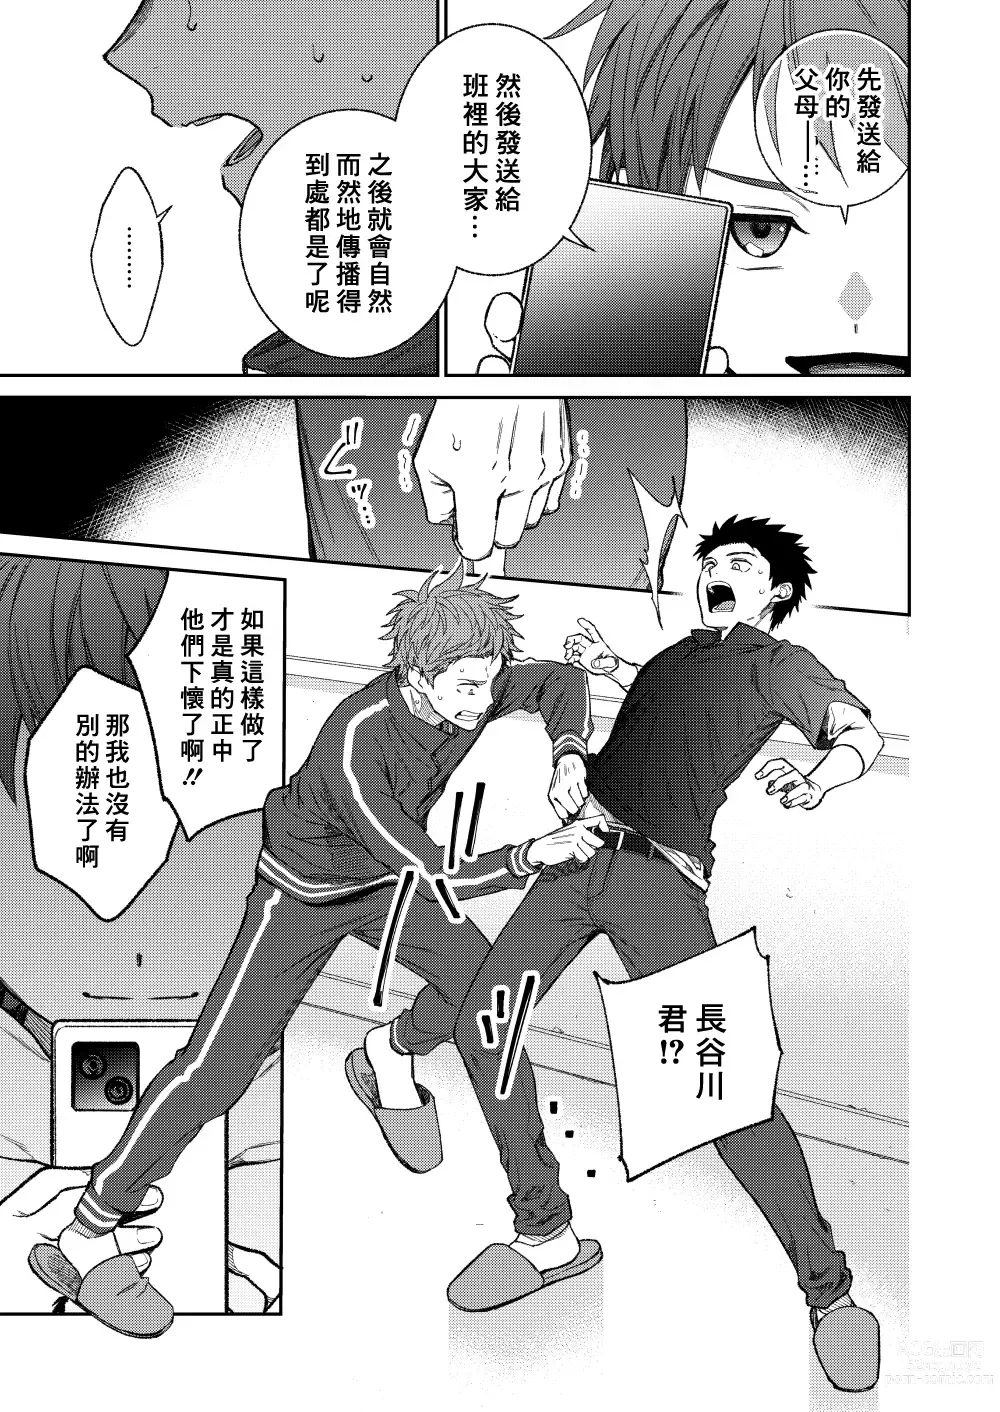 Page 61 of doujinshi 来玩老师吧